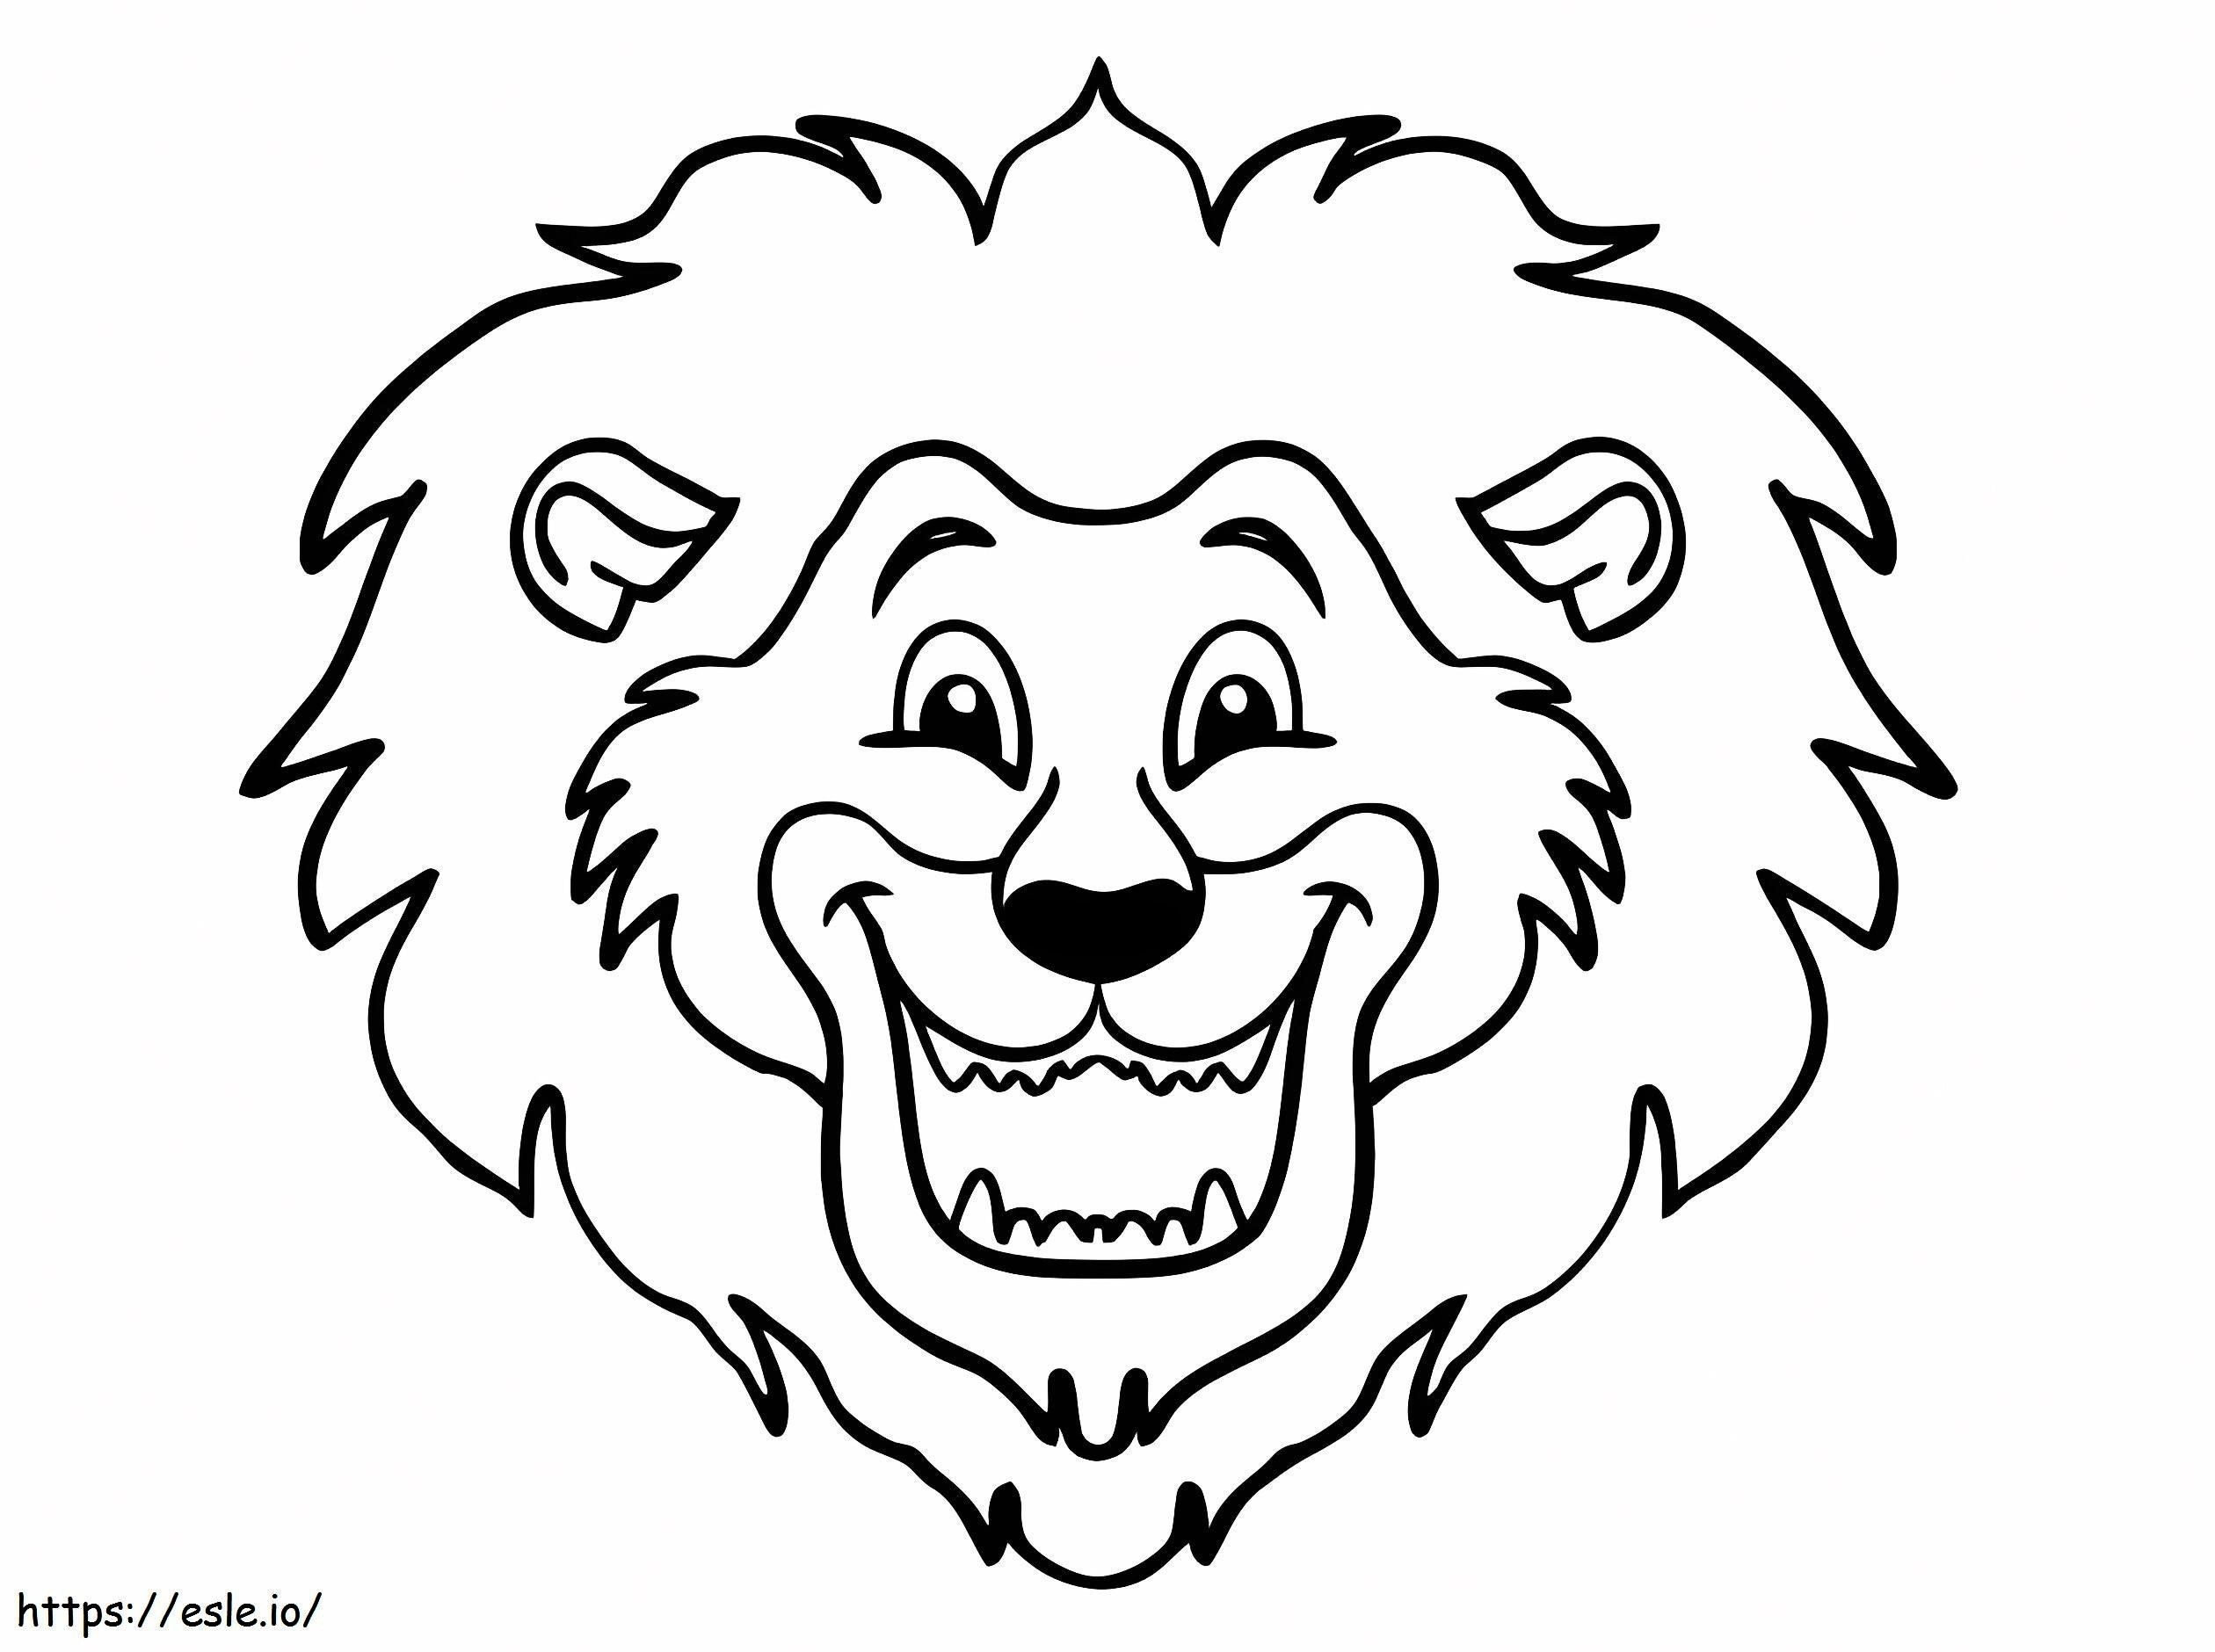 Cara de leão feliz para colorir